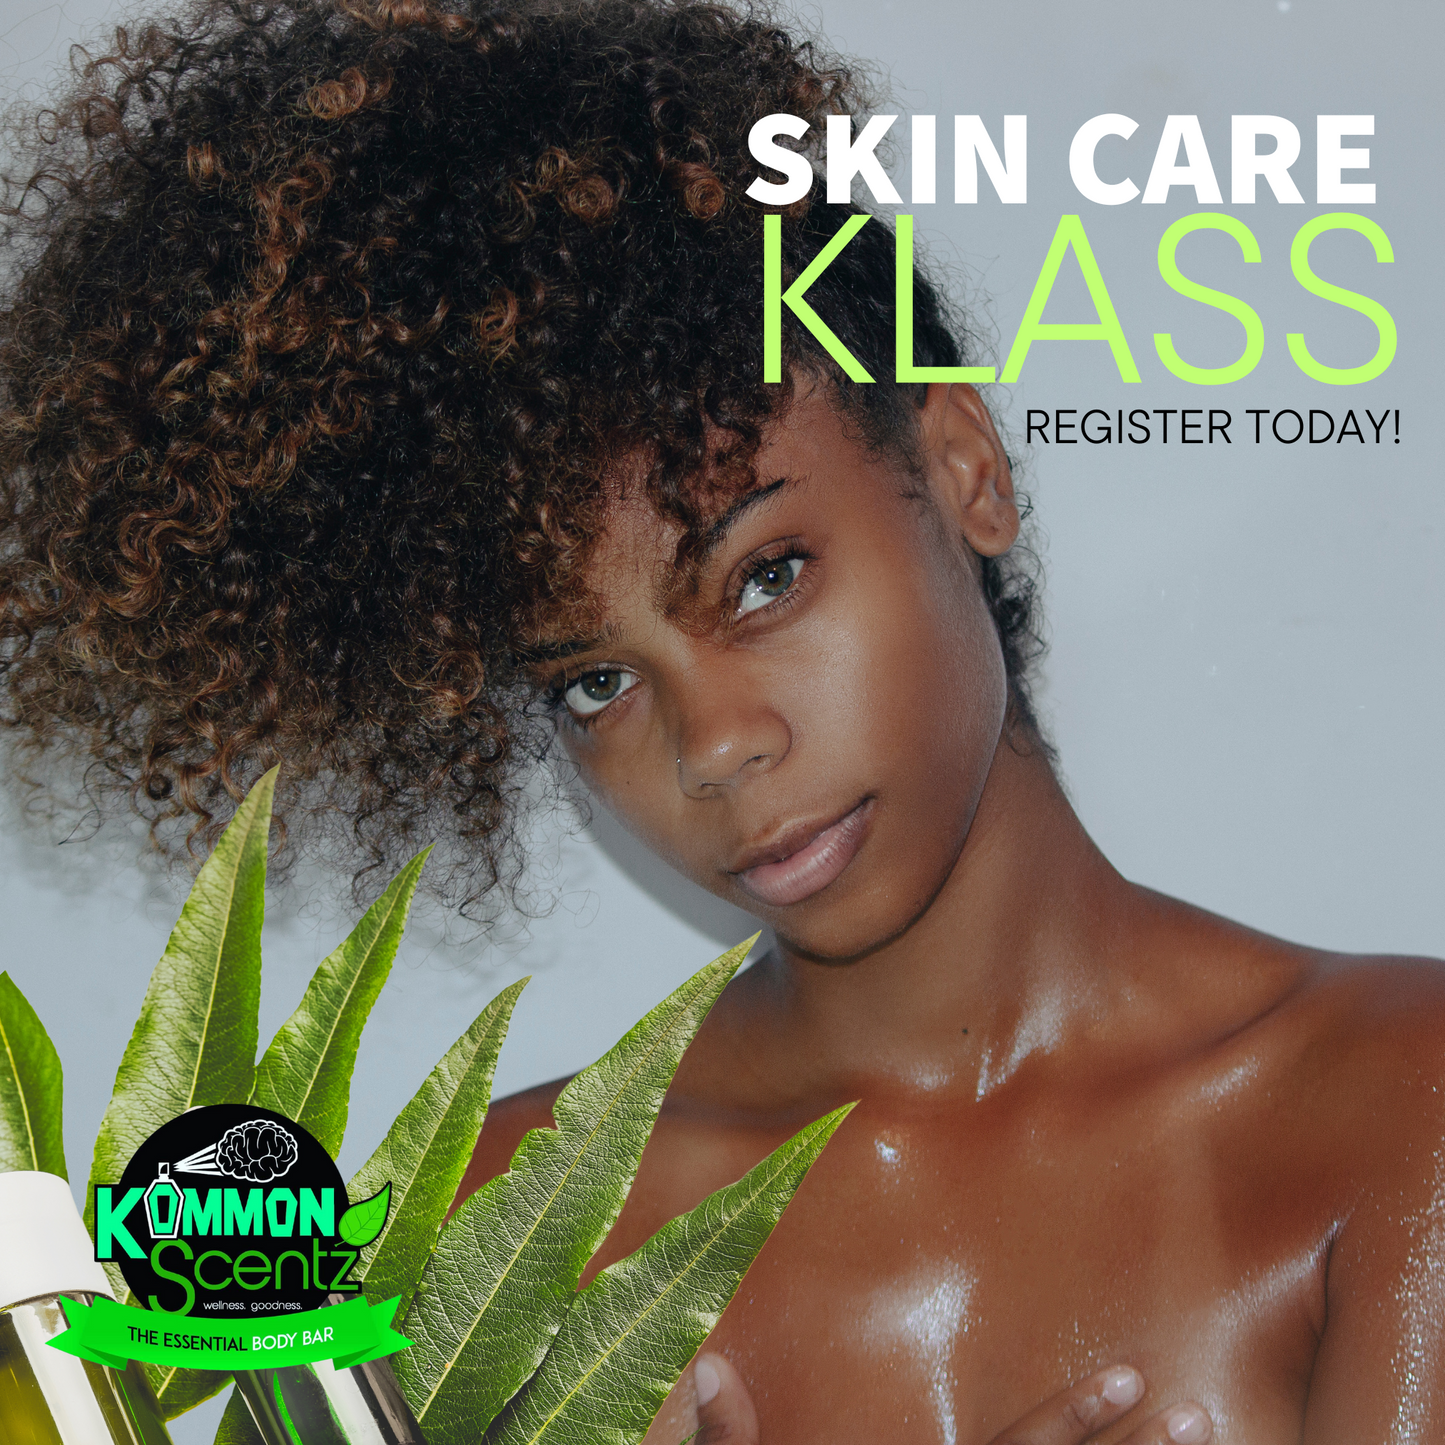 Skin Care Klass - LIVE May 7th at 6PM